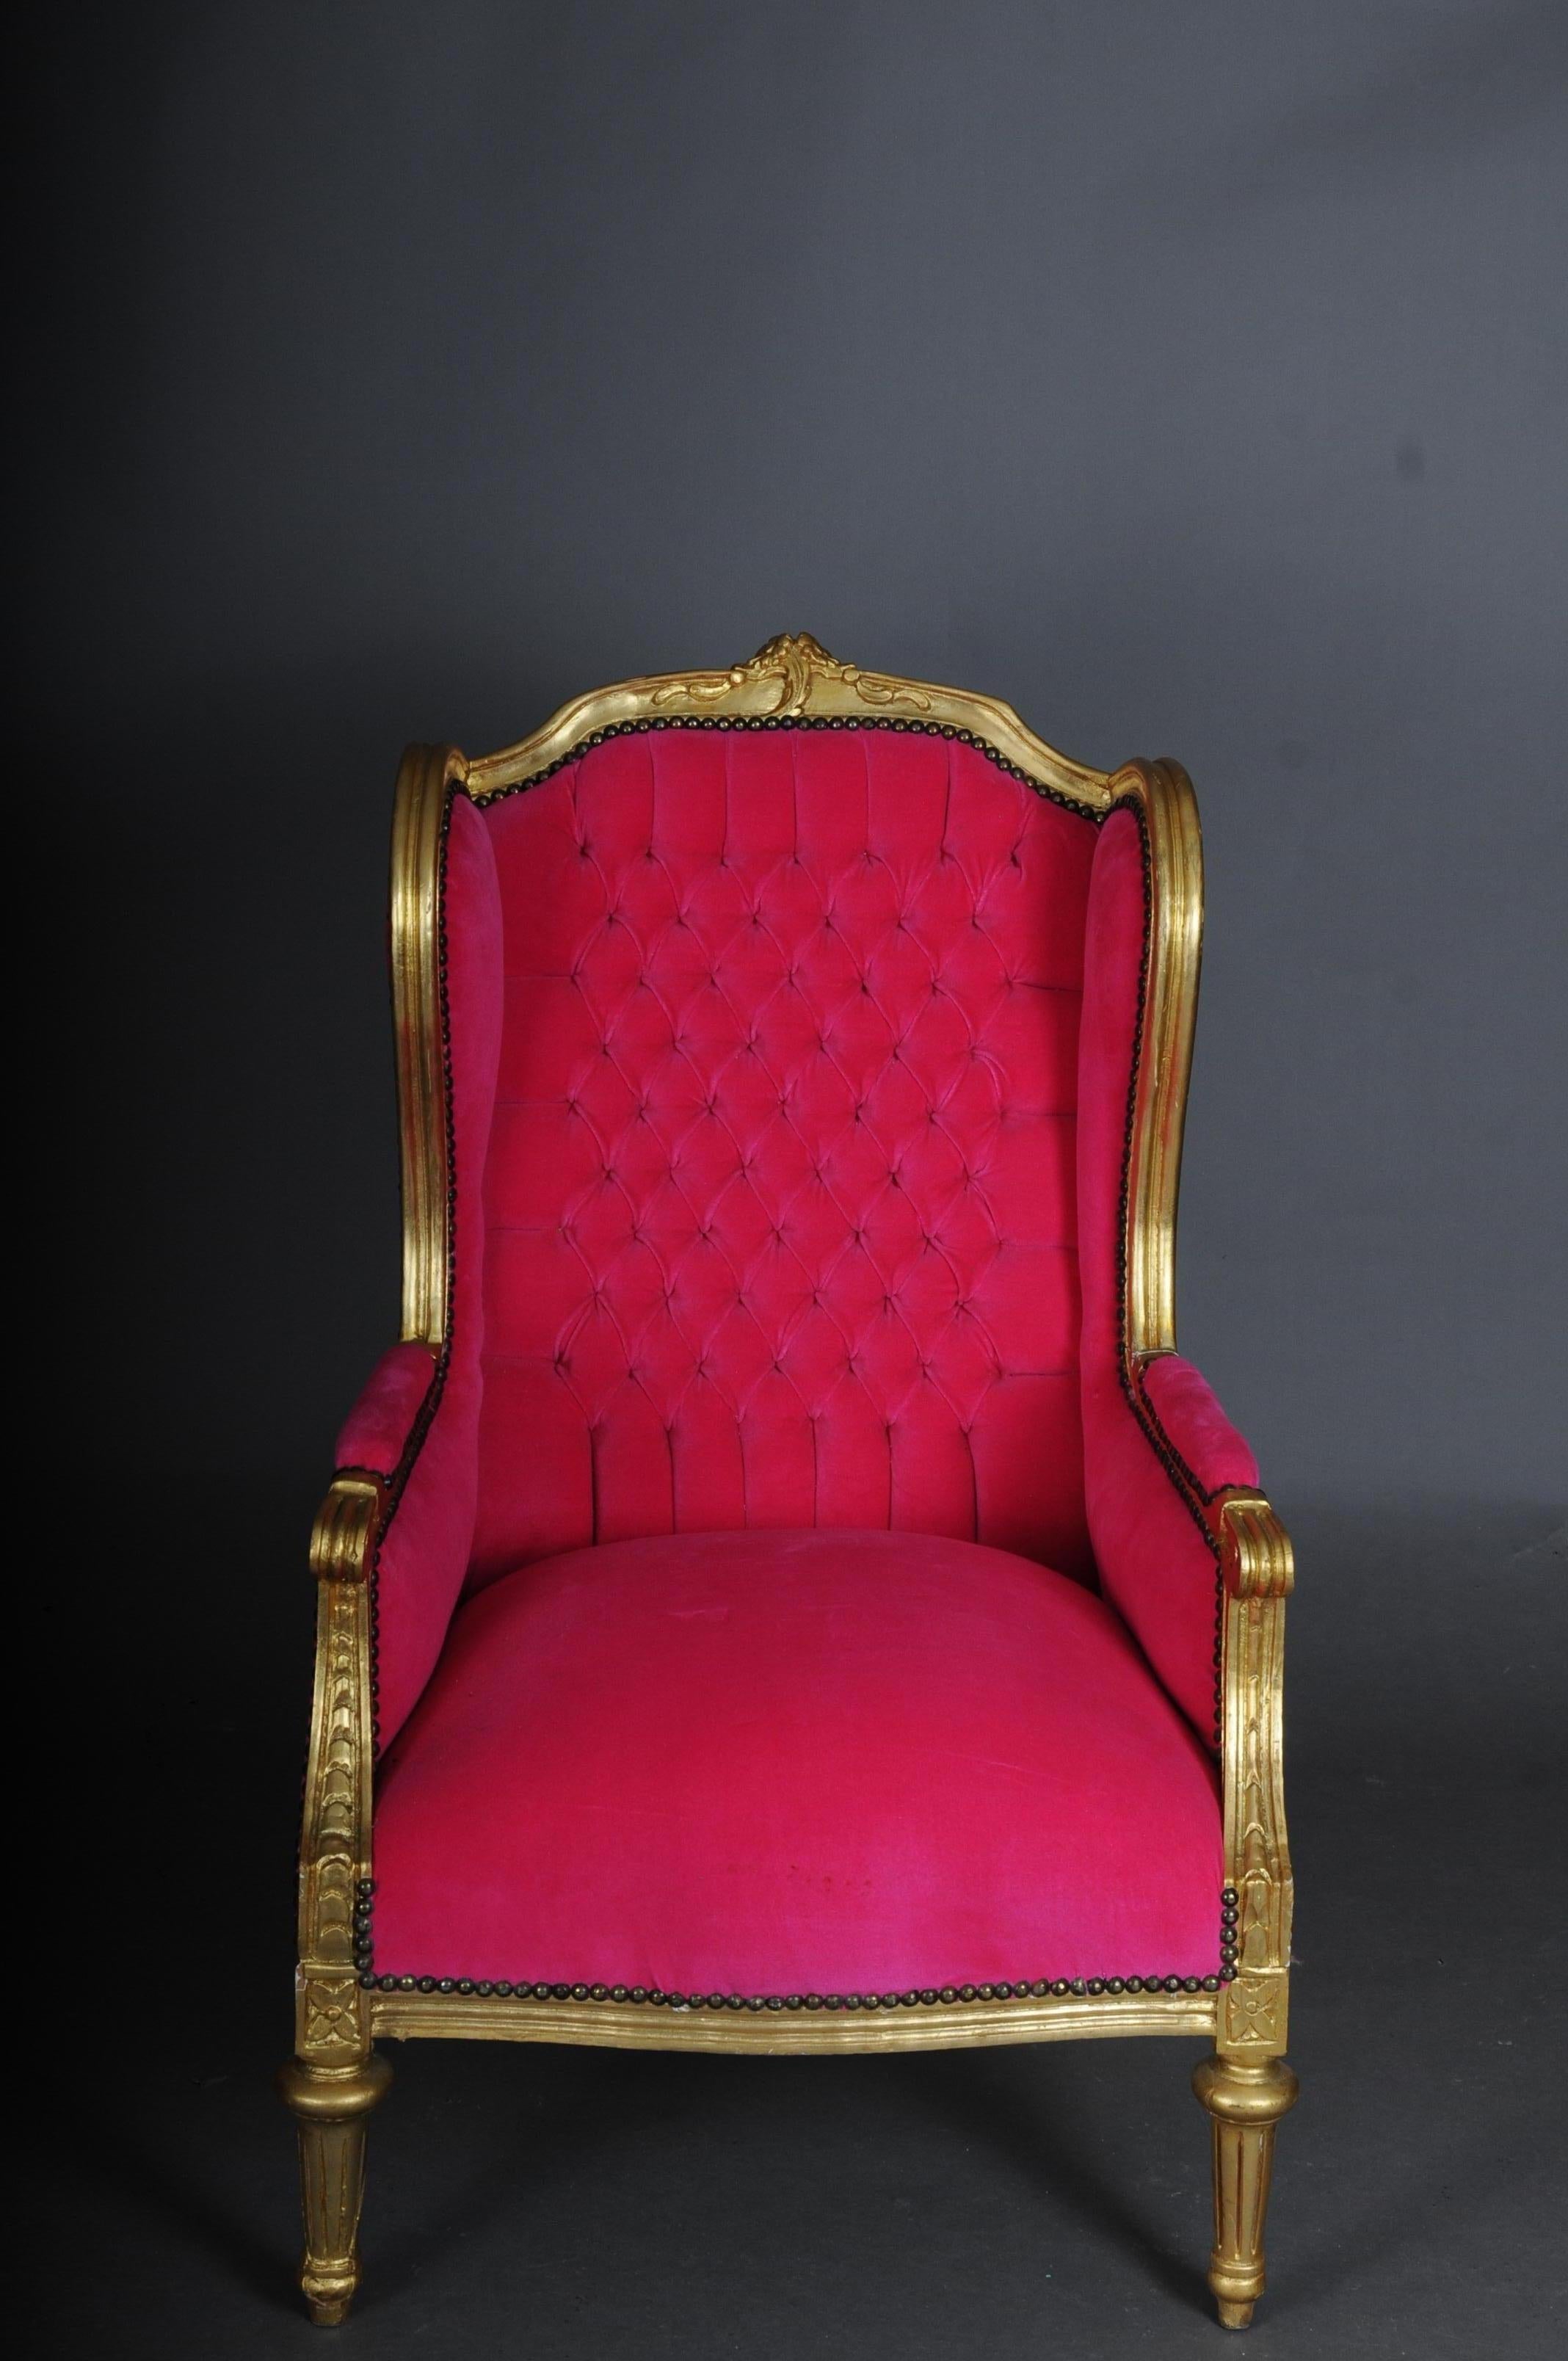 Französischer Ohrensessel Louis XVI, rosa Samtstoff

Massives Buchenholz, geschnitzt, goldfarben lackiert und vergoldet. Rechteckige, ansteigende Rückenlehnen mit Rocaillekränzen umrahmt. Sorgfältig geschwungener, geschnitzter Rahmen. Rahmen auf